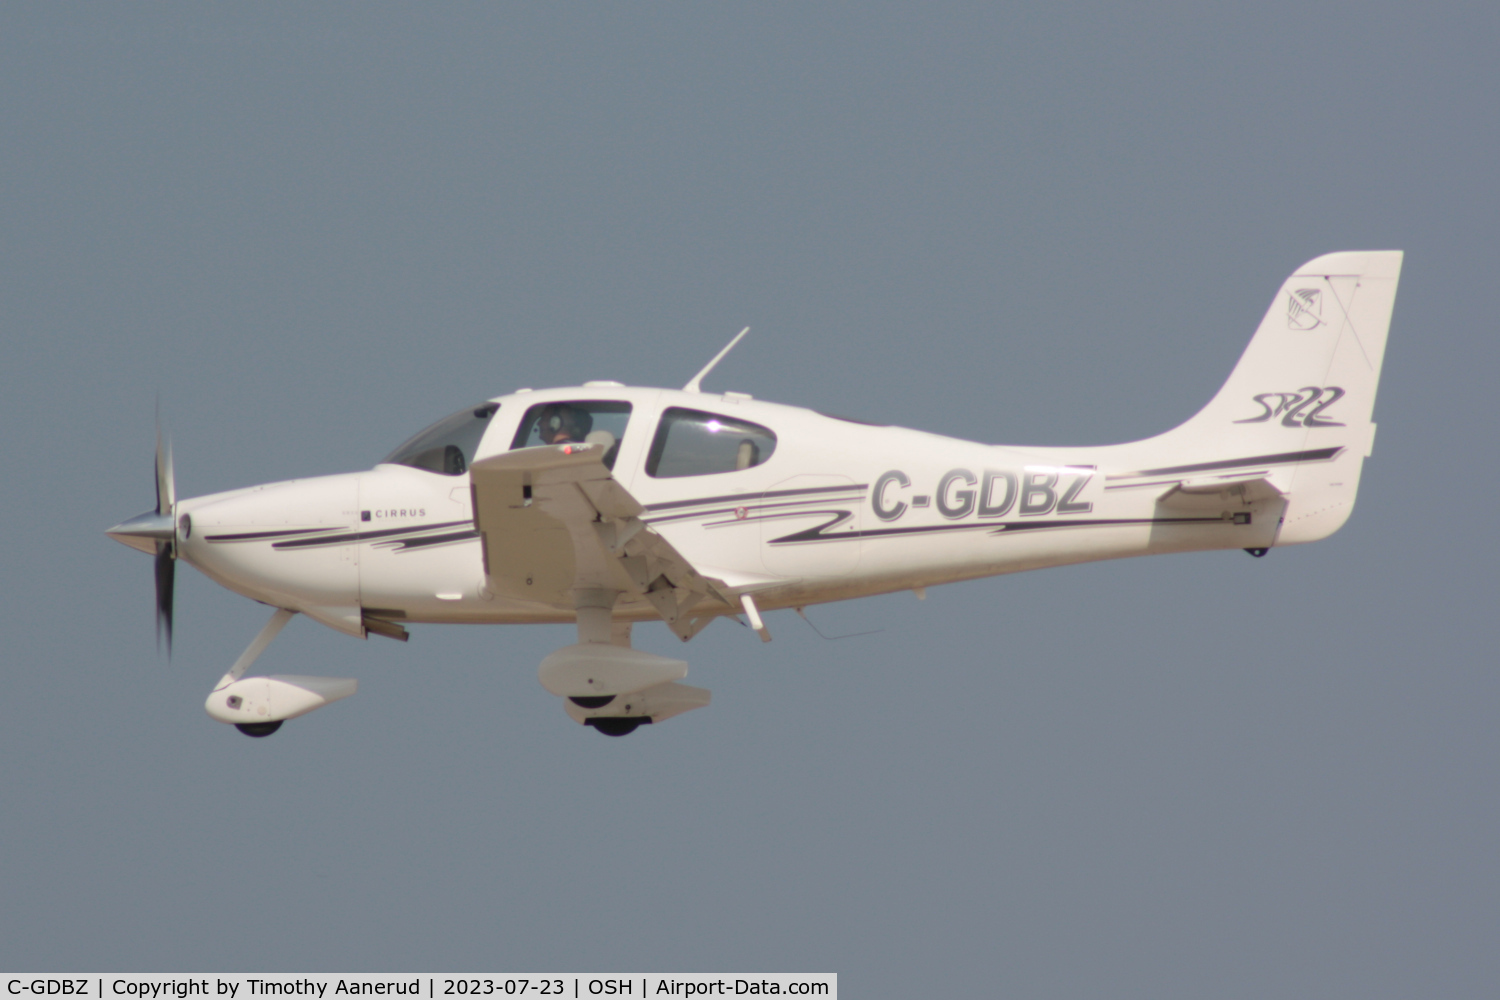 C-GDBZ, 2003 Cirrus SR22 C/N 0499, 2003 Cirrus SR22, c/n: 0499, AirVenture 2023